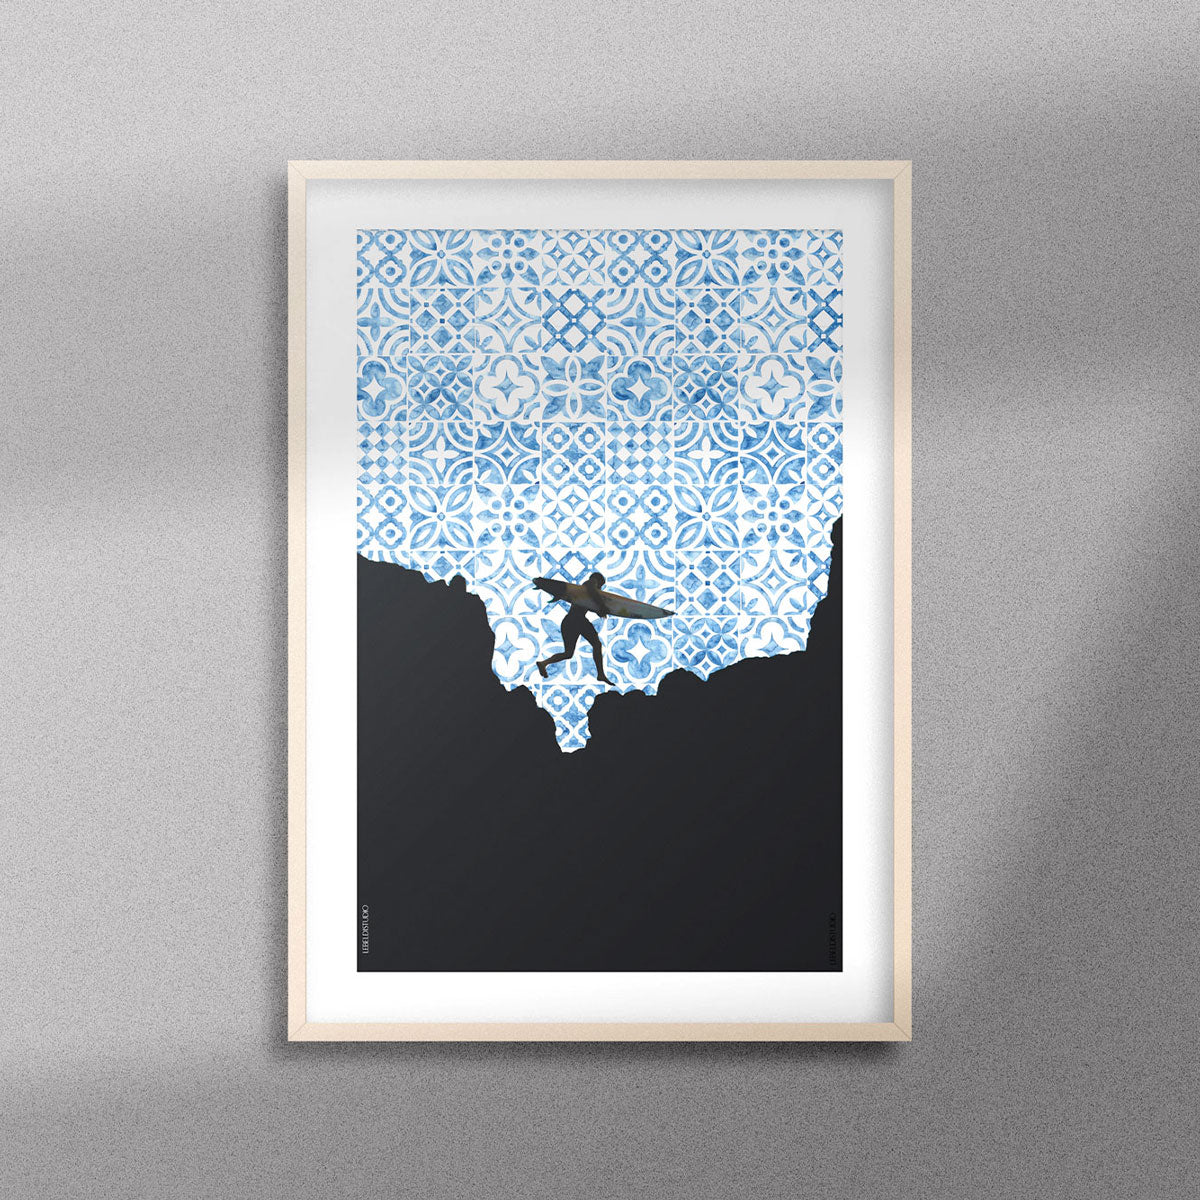 tableau décoratif - Le surfer - Le Beldi Studio.Tableau décoratif de la silhouette d'un surfeur sur un fond de motifs marocains en bleu, encadré dans un cadre en bois - Format A3.